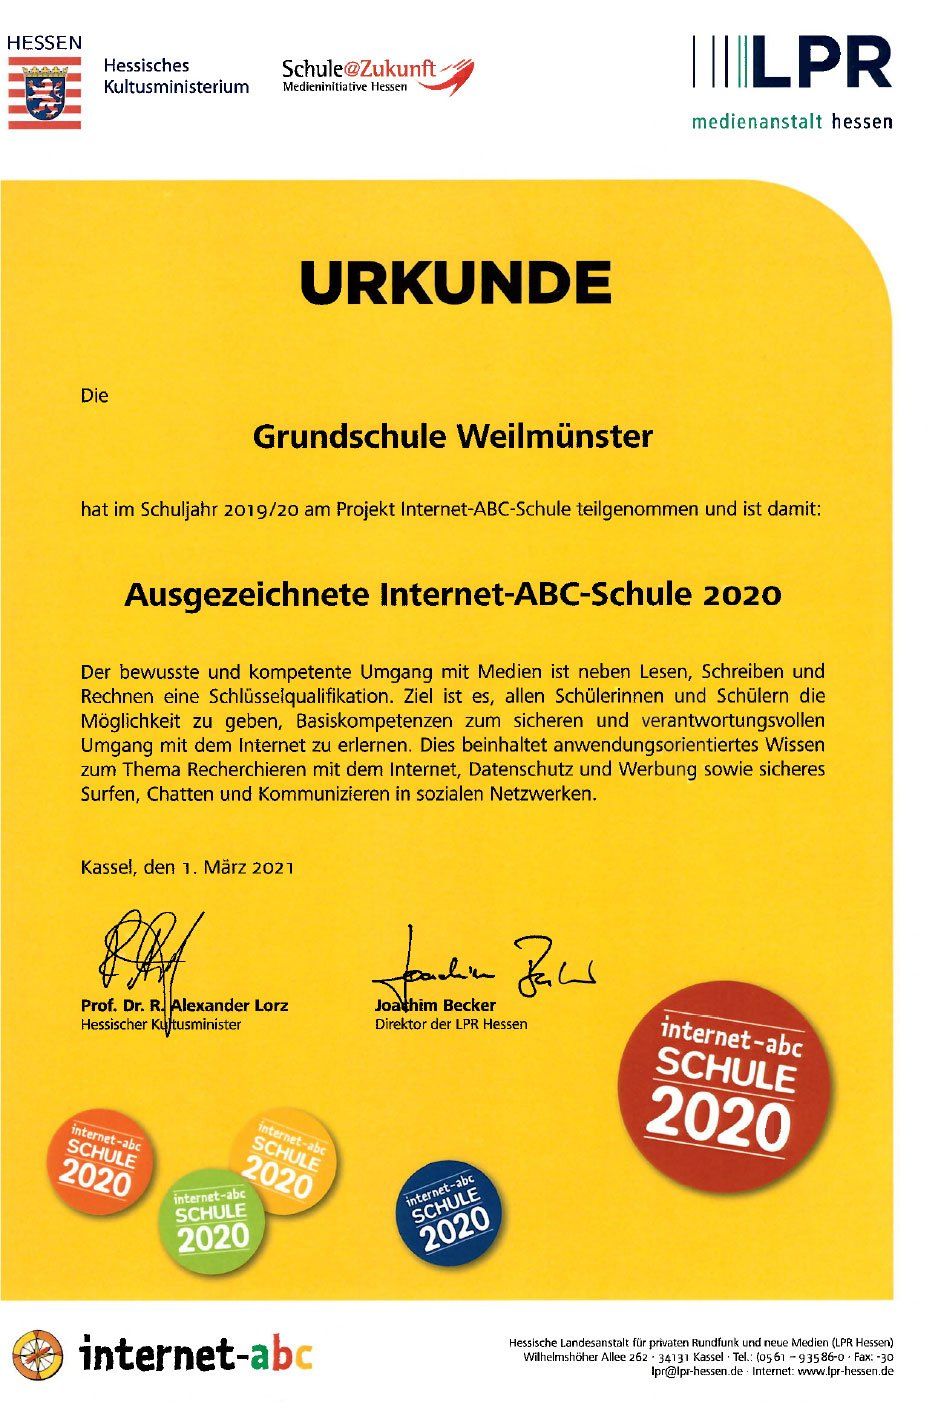 Urkunde der Auszeichnung zur Internet-ABC-Schule 2020